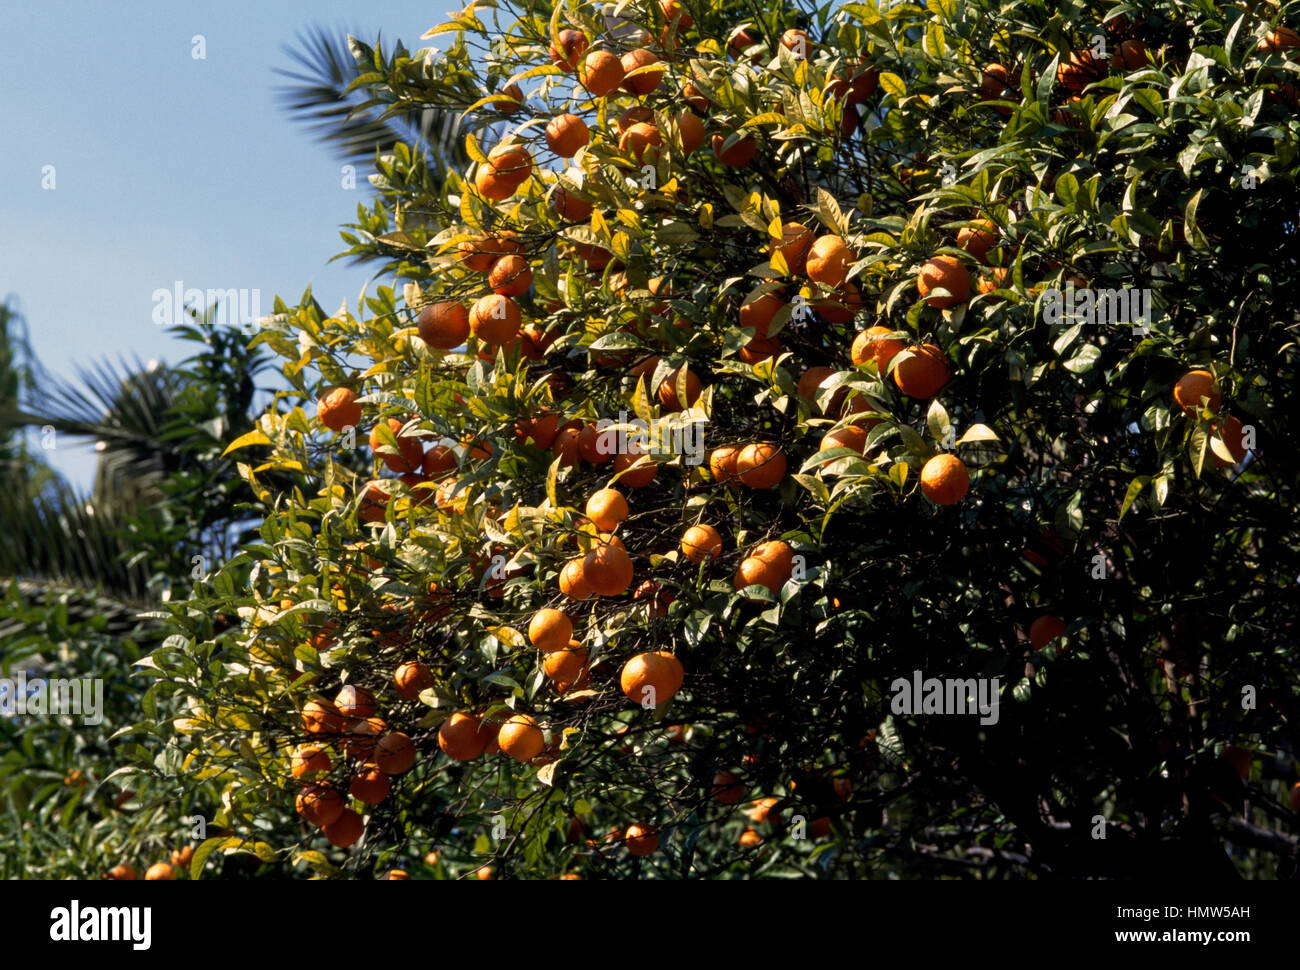 Bitter orange or Seville orange (Citrus x aurantium bigaradia), Rutaceae. Stock Photo